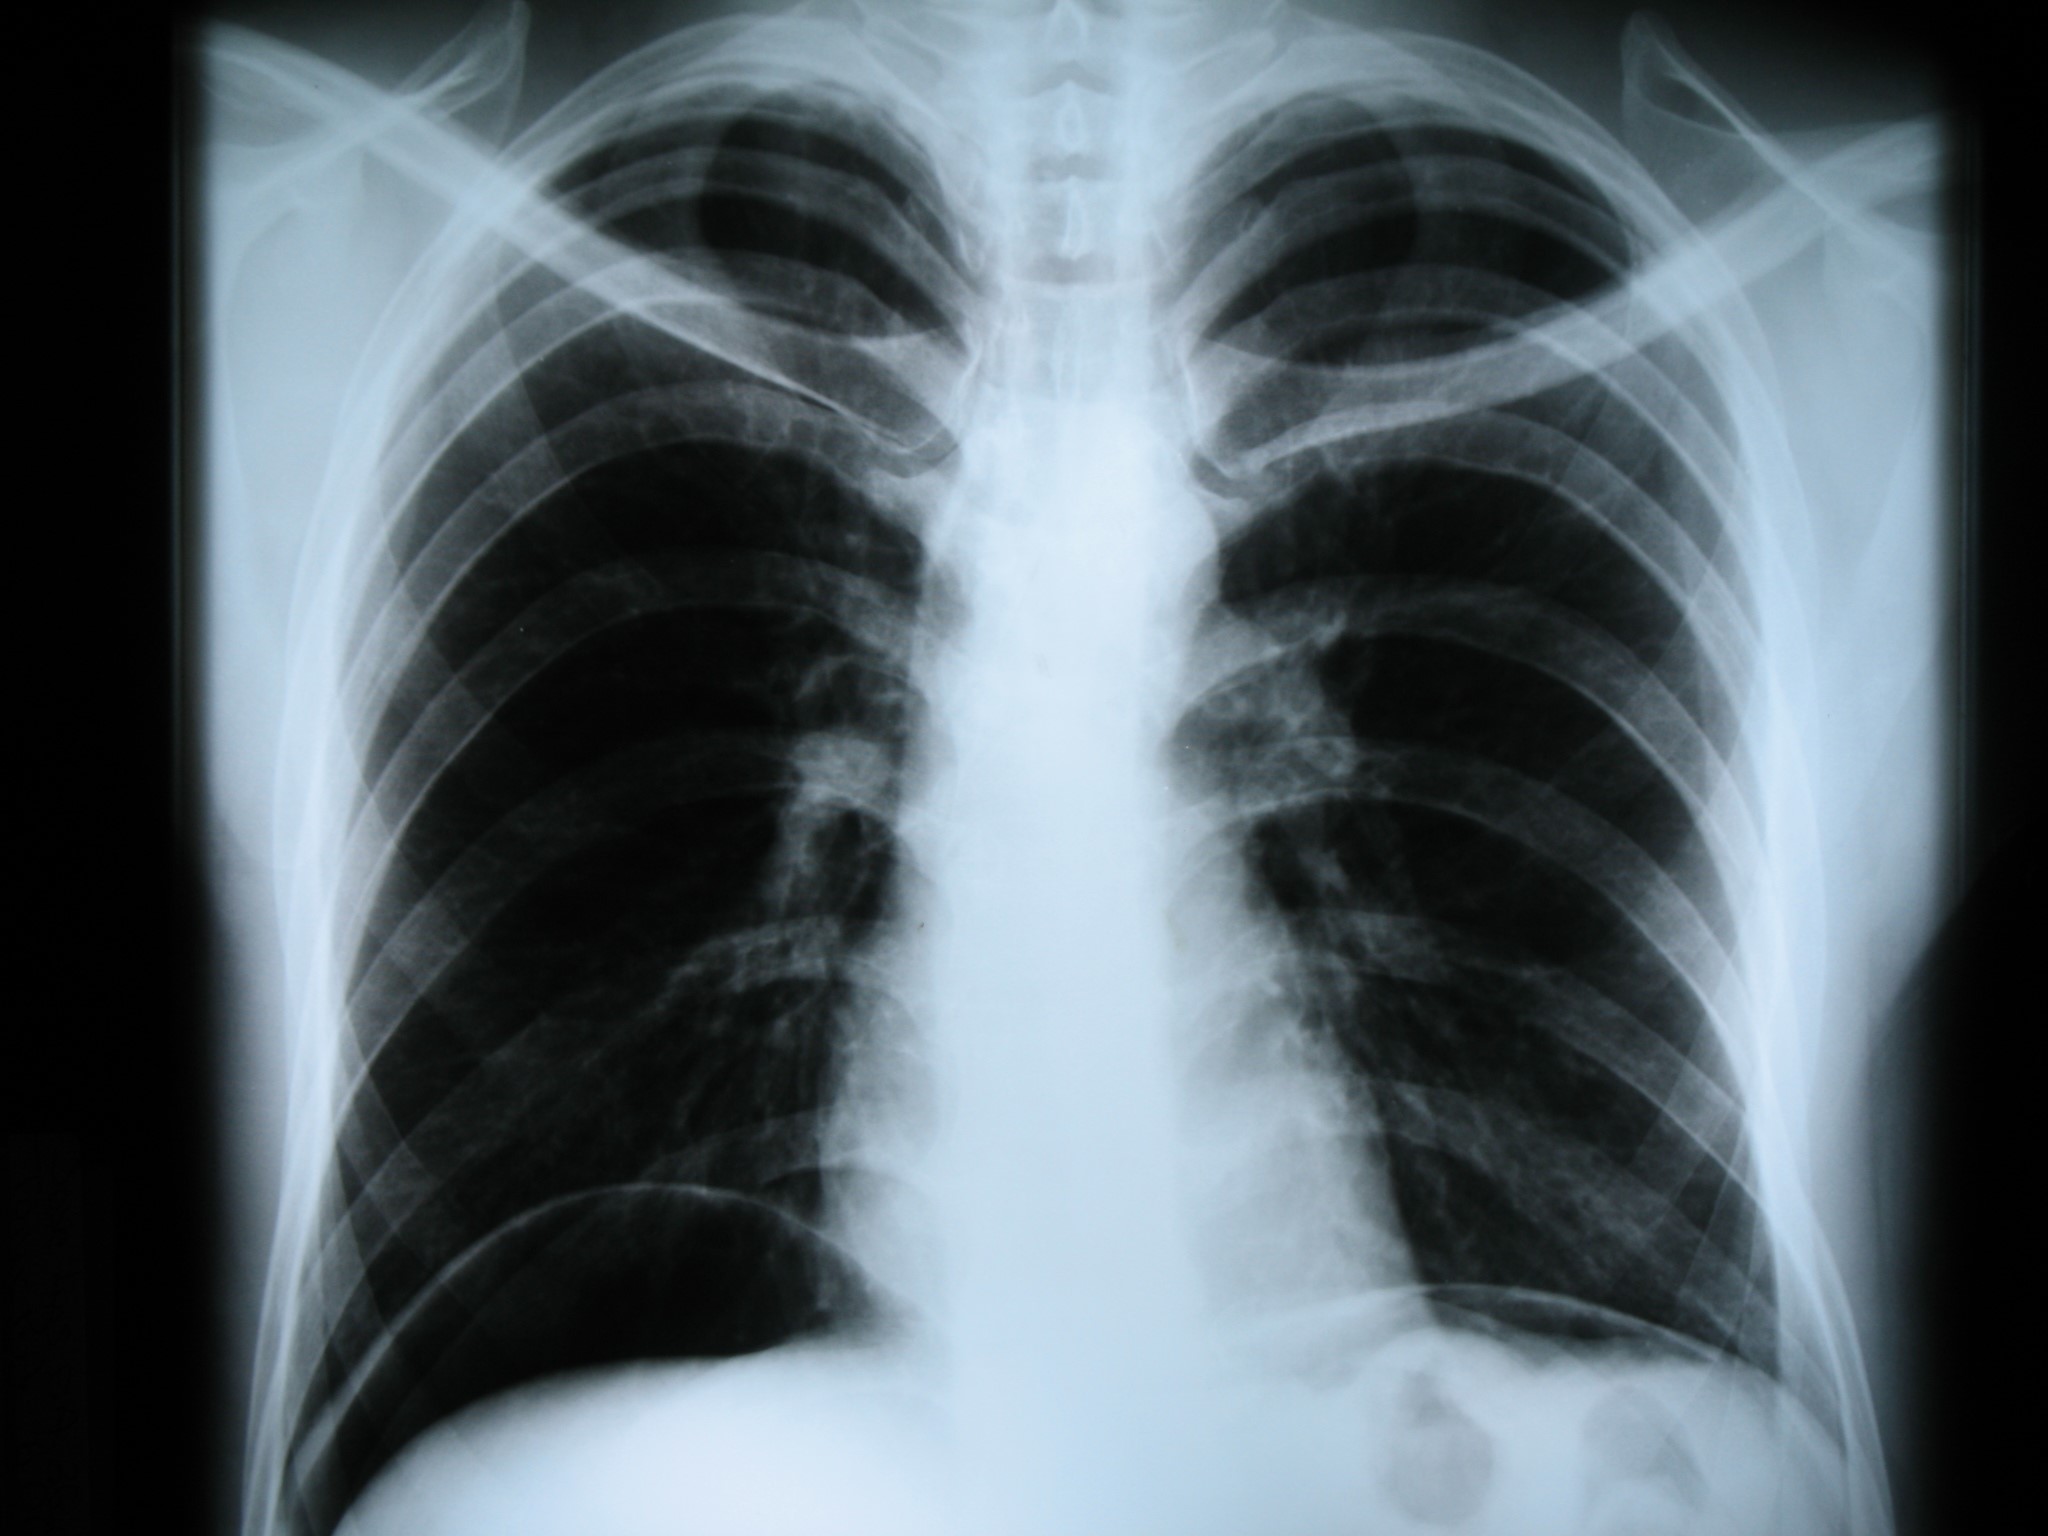 Рентгенограмма органов грудной клетки в прямой проекции. Видно скопление воздуха под куполами диафрагмы